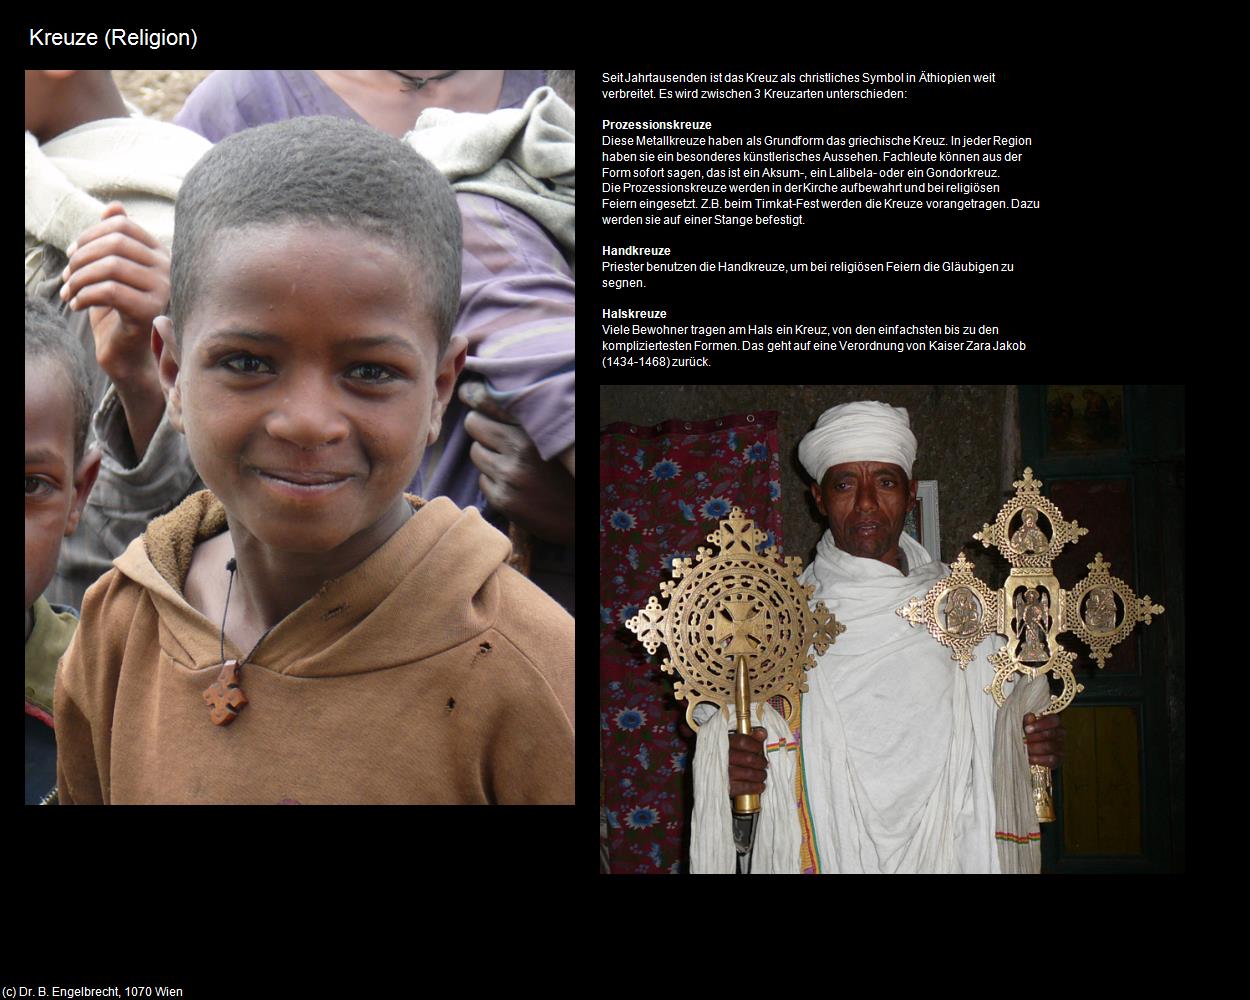 Kreuze (+Religion) in Äthiopien